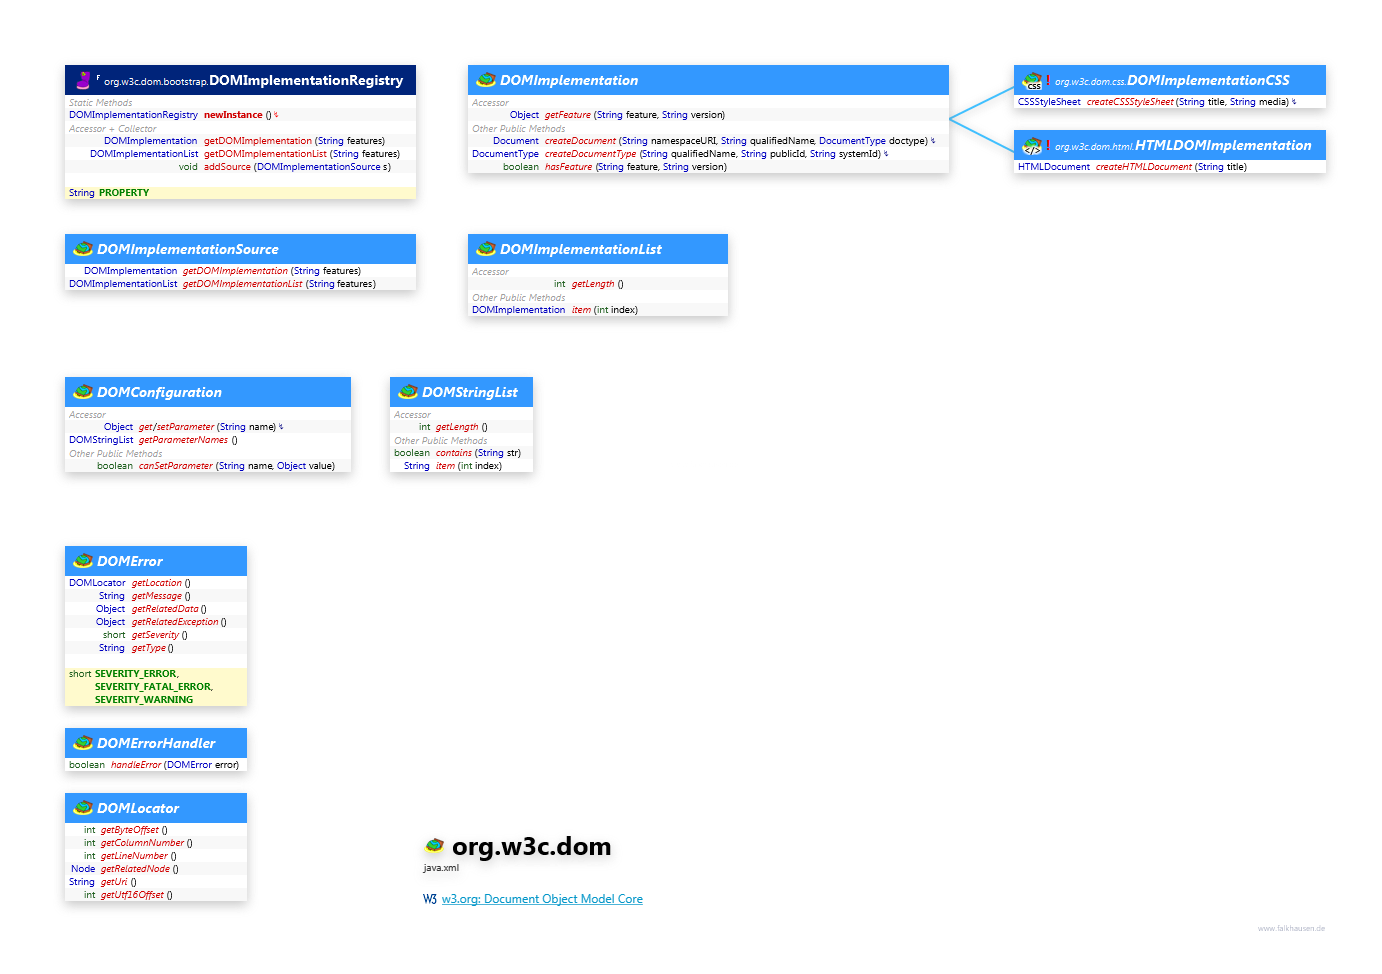 org.w3c.dom Dom class diagram and api documentation for Java 10